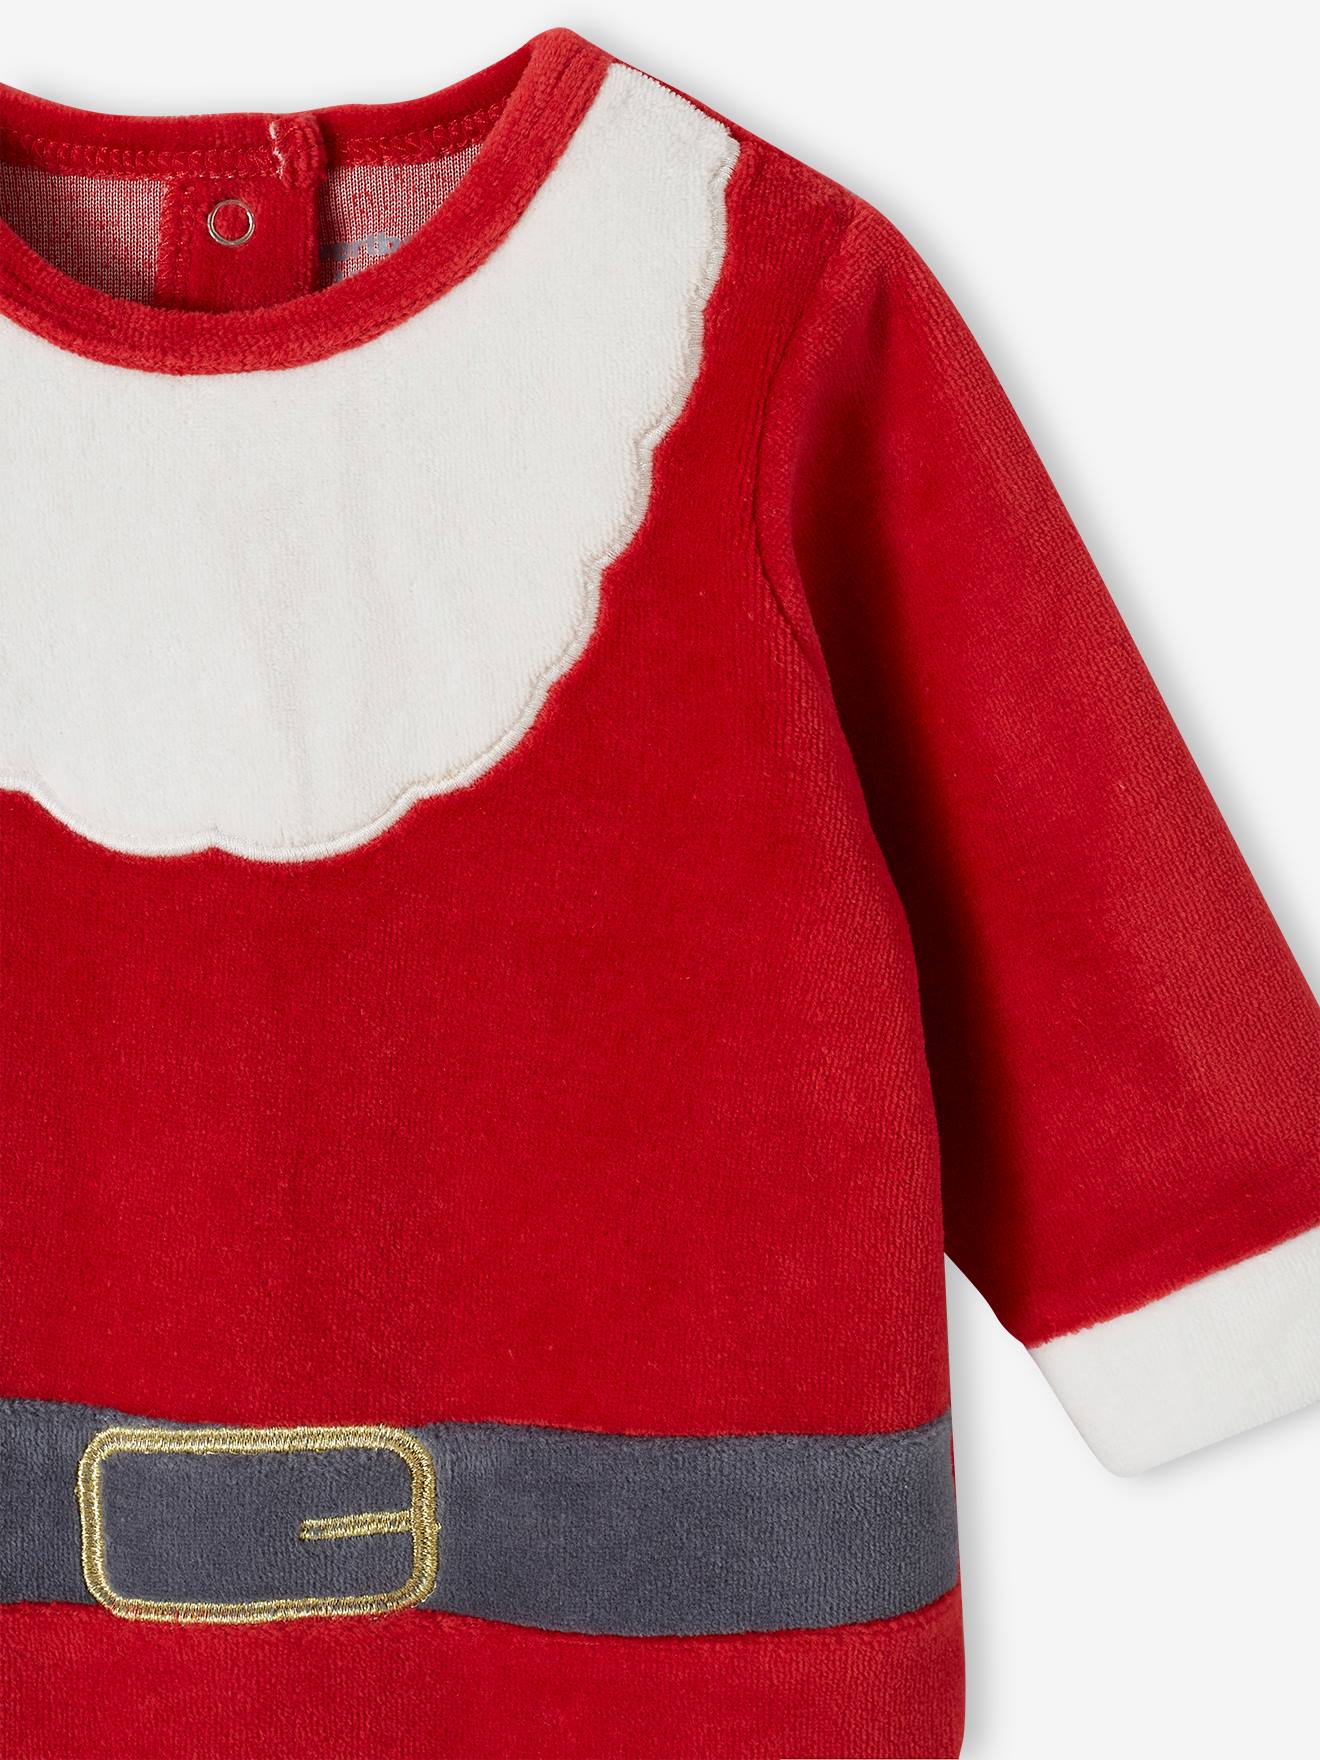 Pyjama velours rouge Le lutin de Noël bébé garçon 3 MOIS LES CHATOUNETS